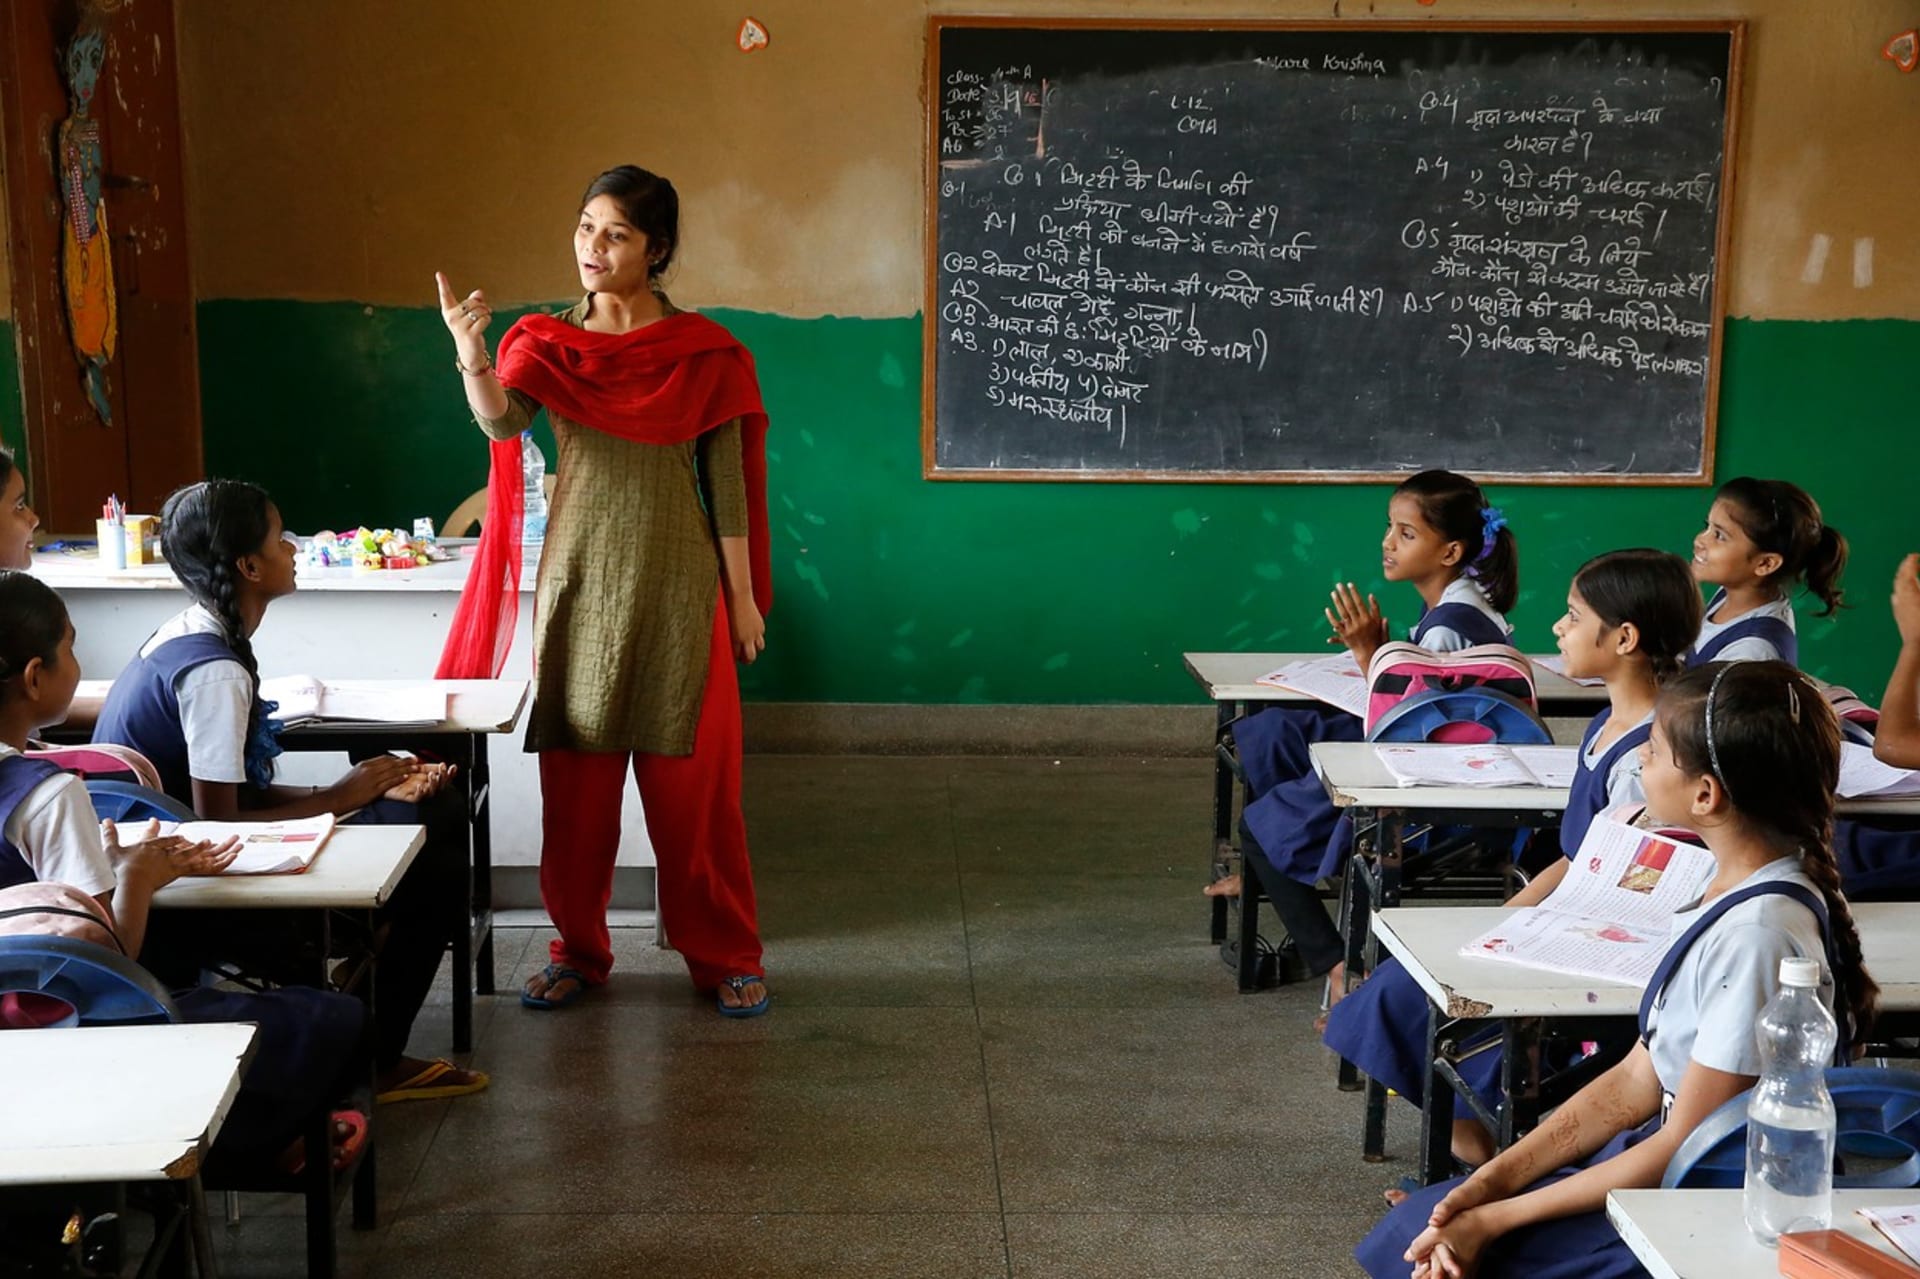 Učitelka v Indii nutila děti fackovat muslimského spolužáka. (Ilustrační foto)